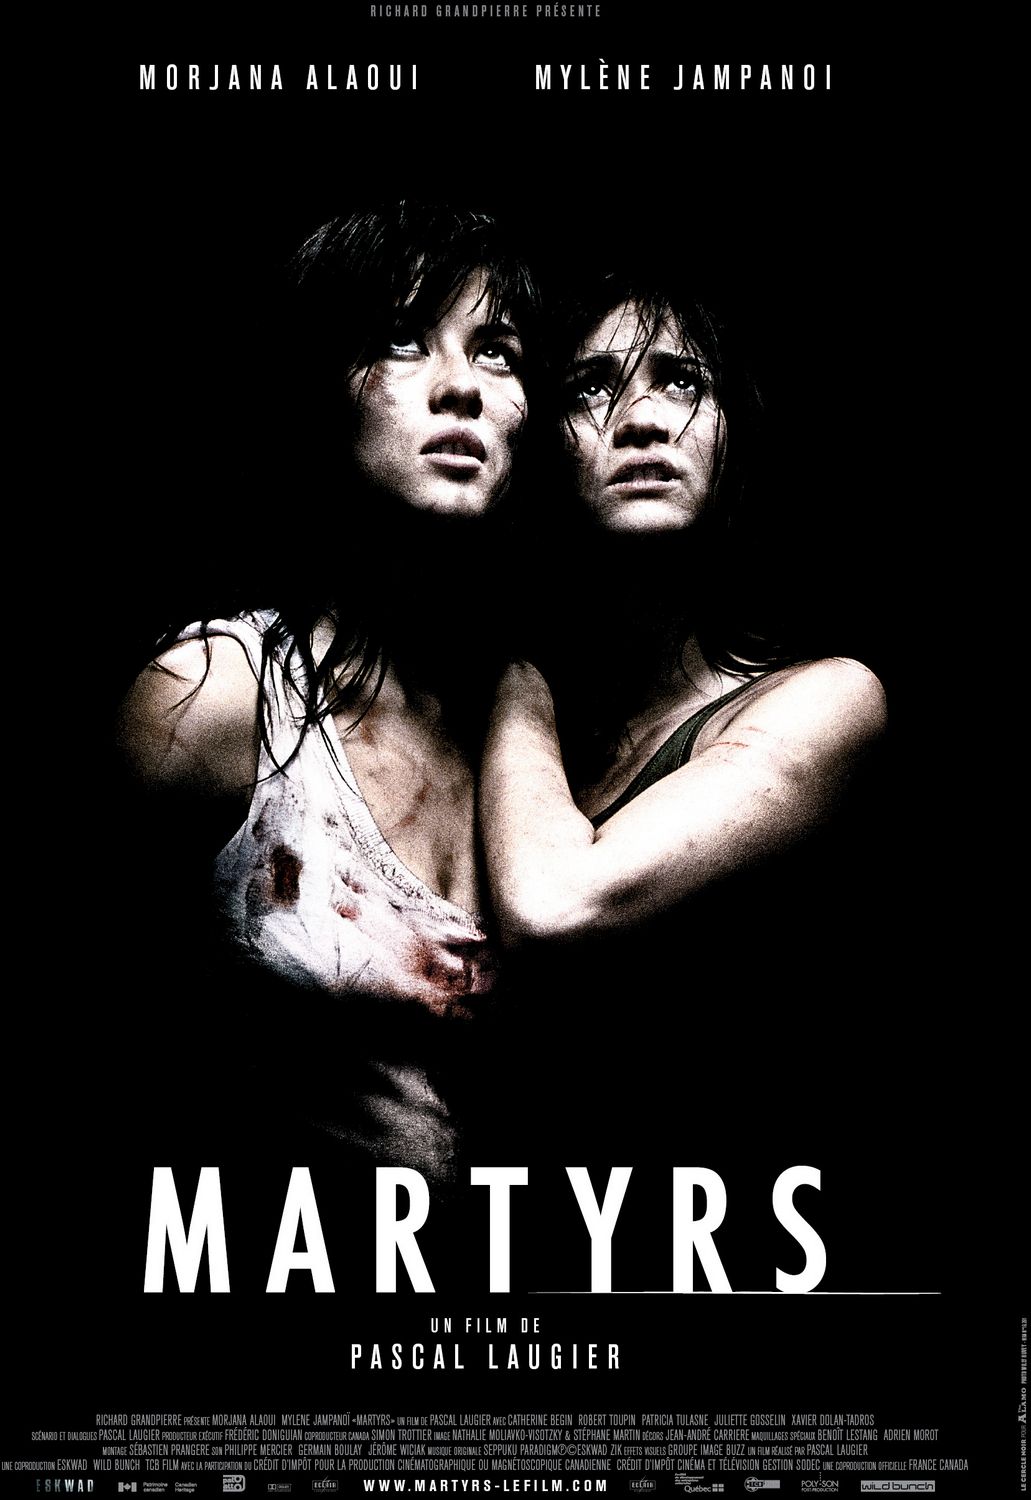 FULL MOVIE: Martyrs (2008)